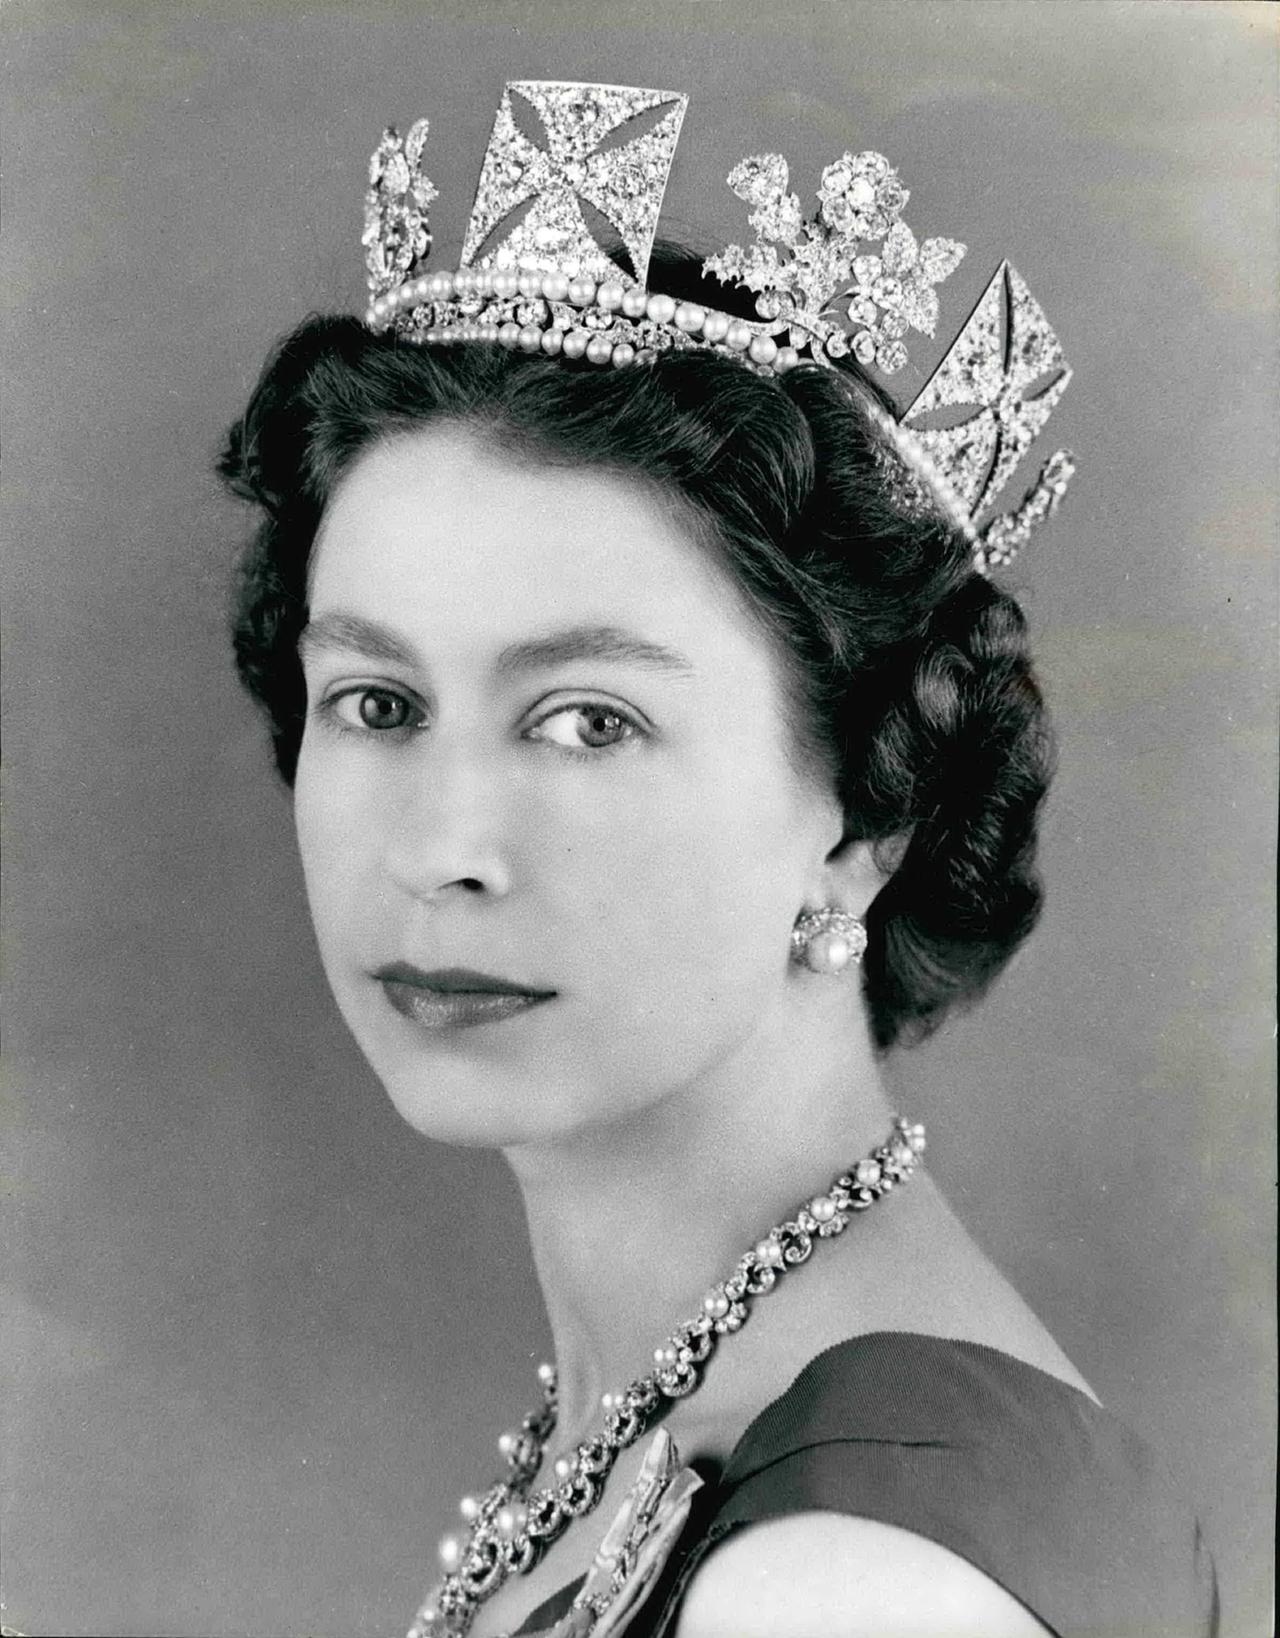 Porträt von Queen Elisabeth II. als junger Frau mit Diadem und juwelenbesetzter Halskette.